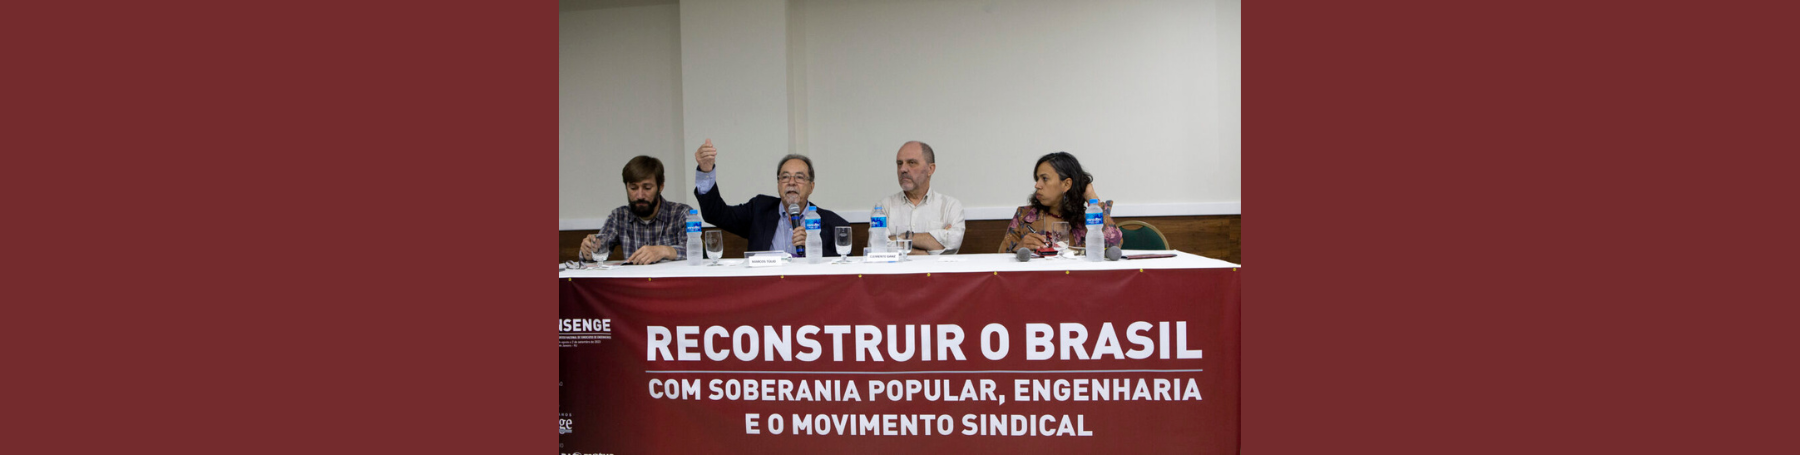 Profissionais da engenharia debatem reconstrução do Brasil com soberania popular e sindicalismo